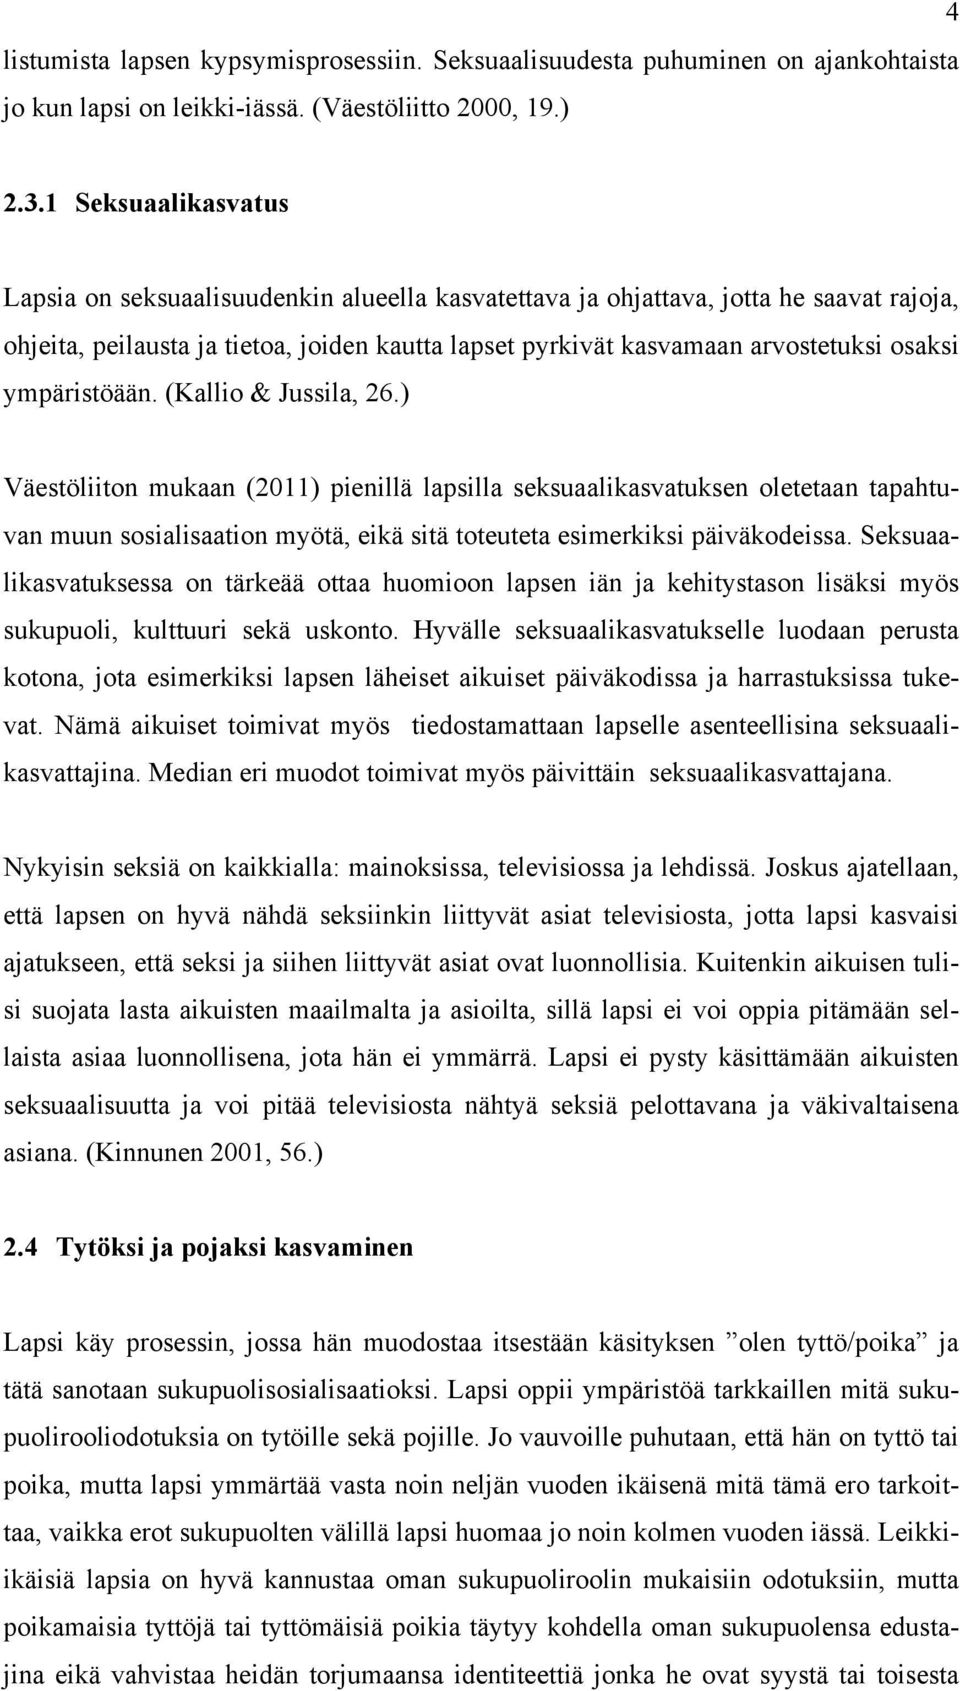 ympäristöään. (Kallio & Jussila, 26.) Väestöliiton mukaan (2011) pienillä lapsilla seksuaalikasvatuksen oletetaan tapahtuvan muun sosialisaation myötä, eikä sitä toteuteta esimerkiksi päiväkodeissa.